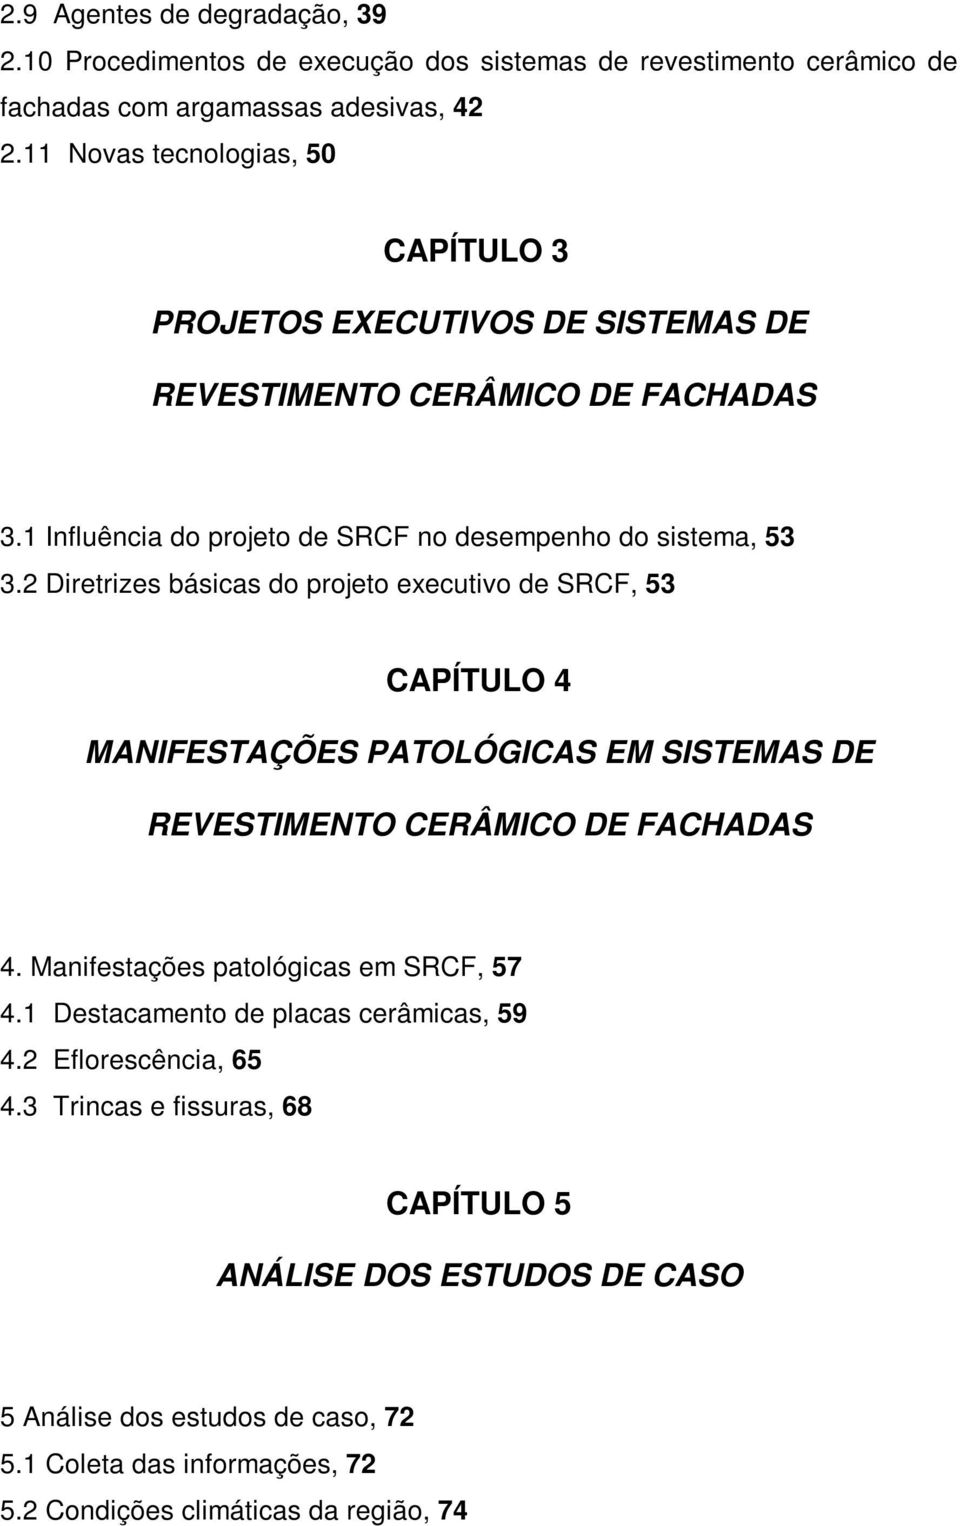 2 Diretrizes básicas do projeto executivo de SRCF, 53 CAPÍTULO 4 MANIFESTAÇÕES PATOLÓGICAS EM SISTEMAS DE REVESTIMENTO CERÂMICO DE FACHADAS 4.